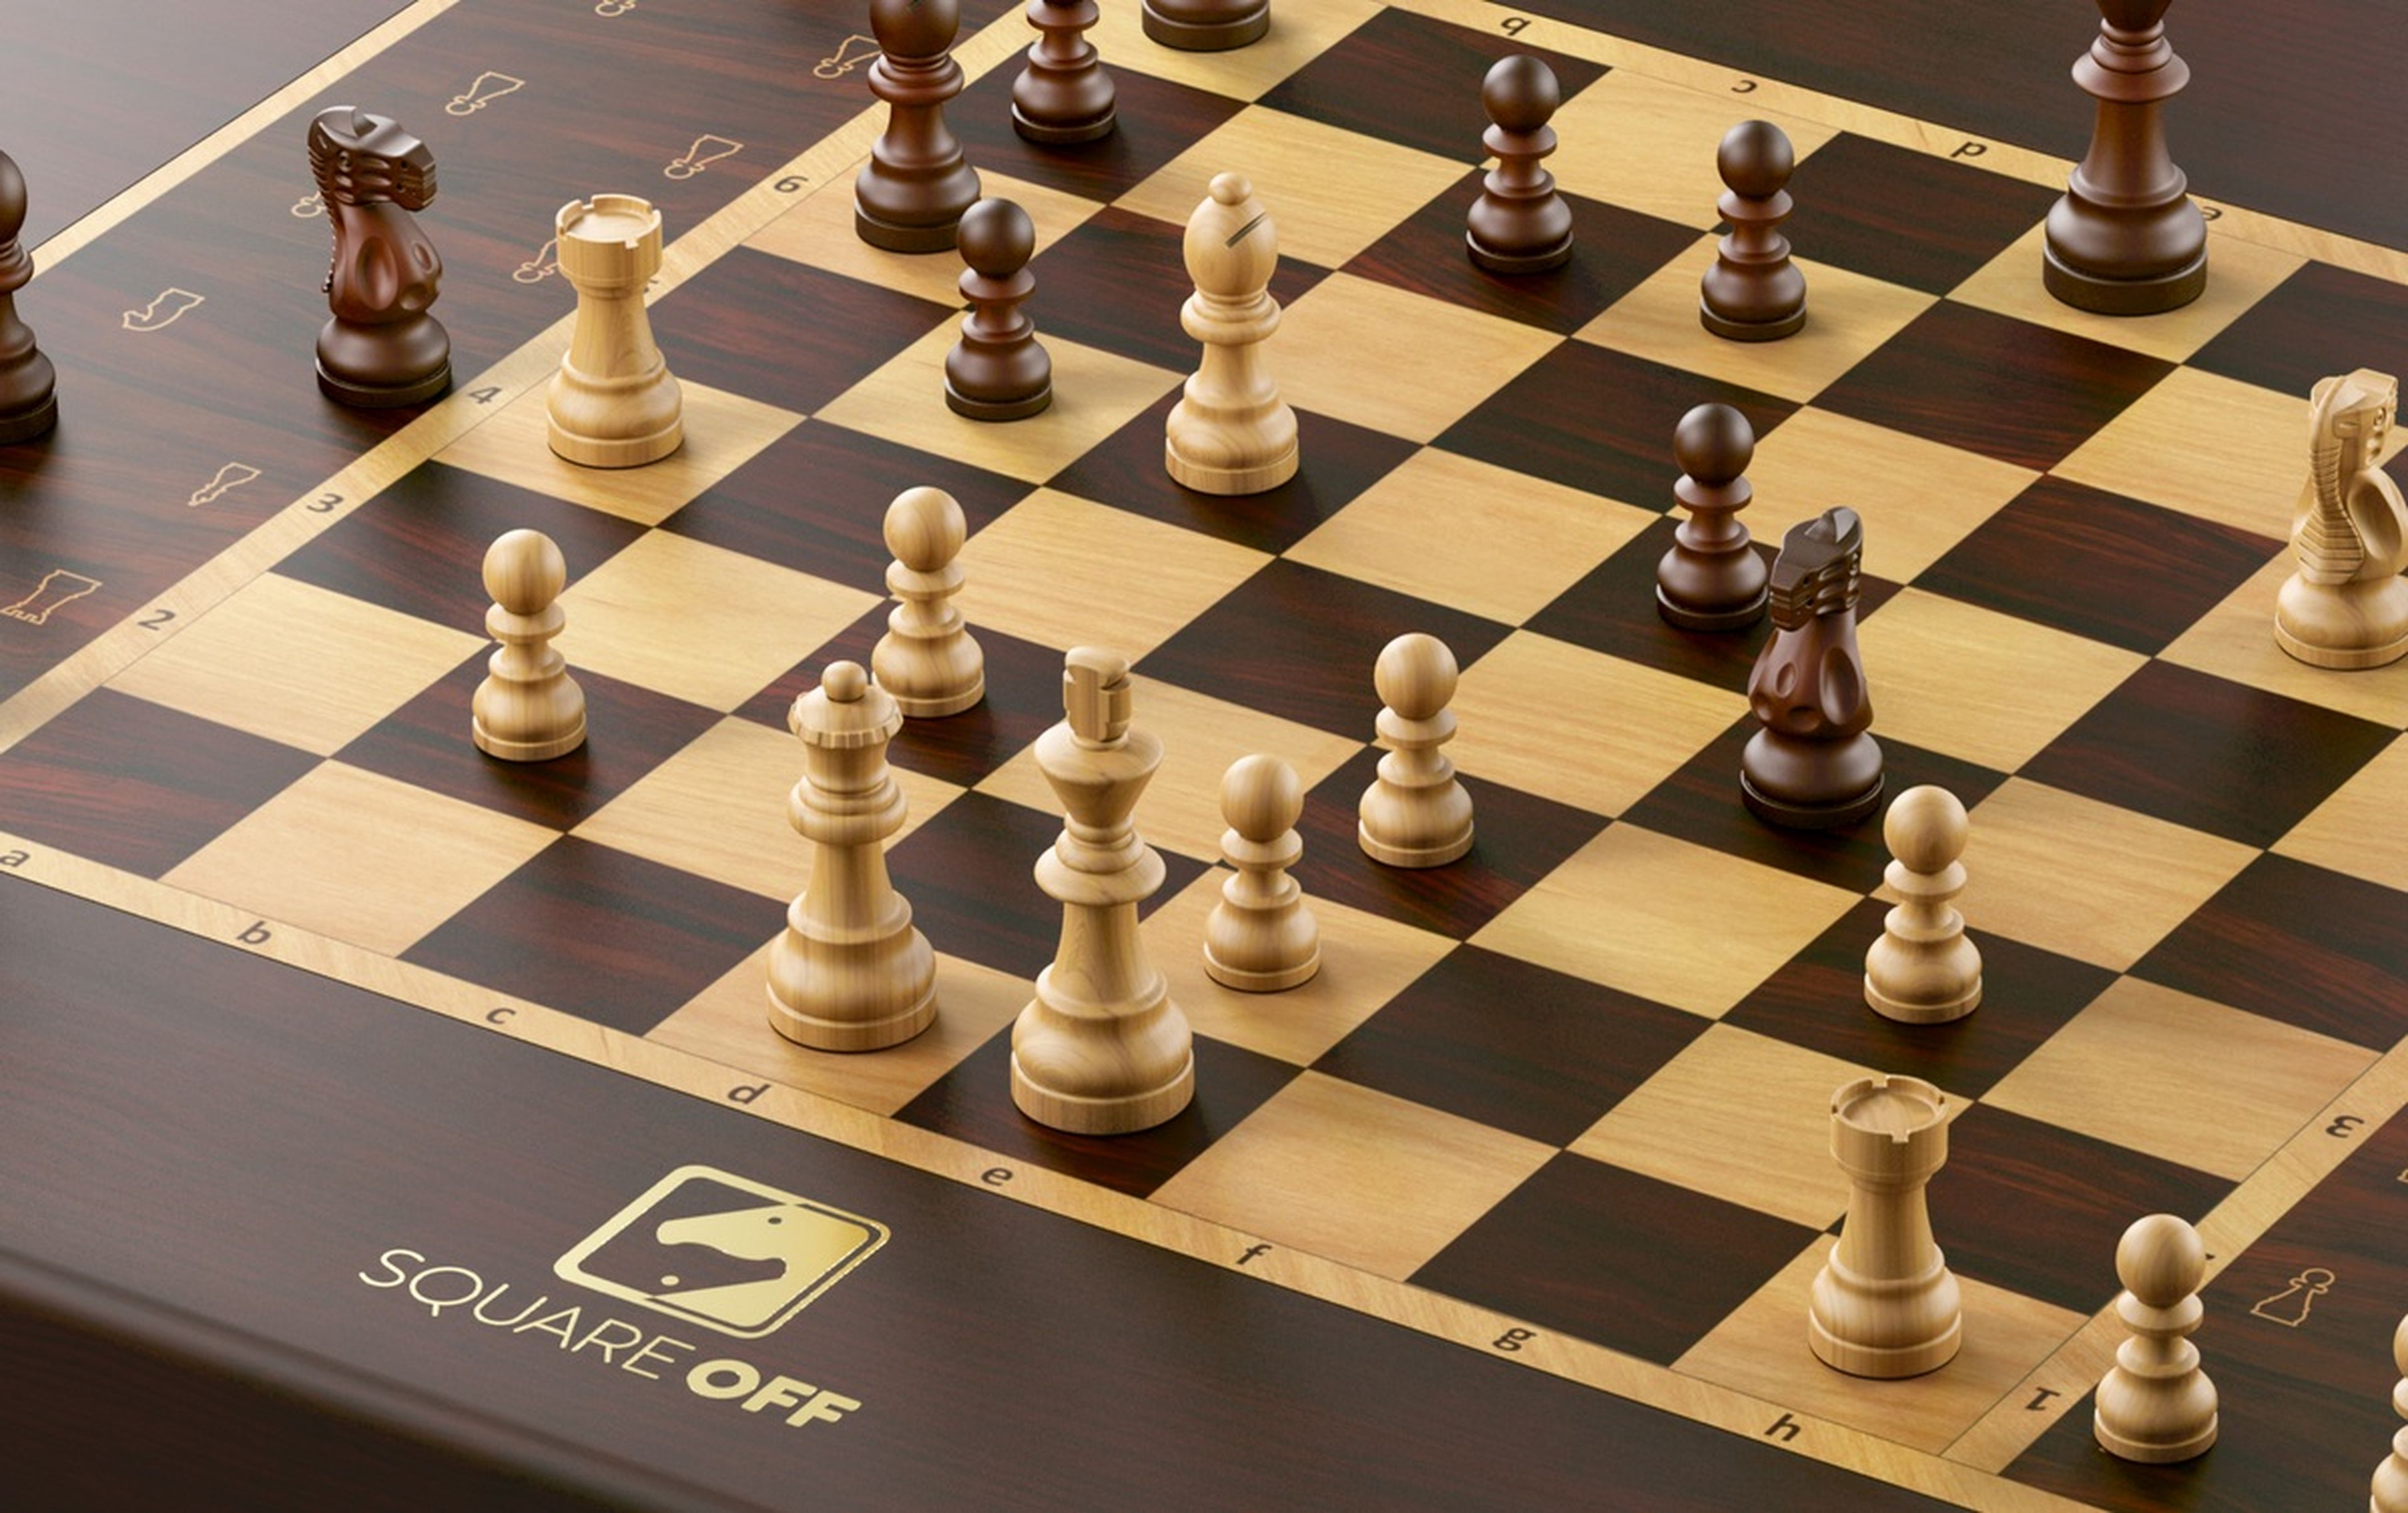 Las mejores 8 webs para jugar al ajedrez online